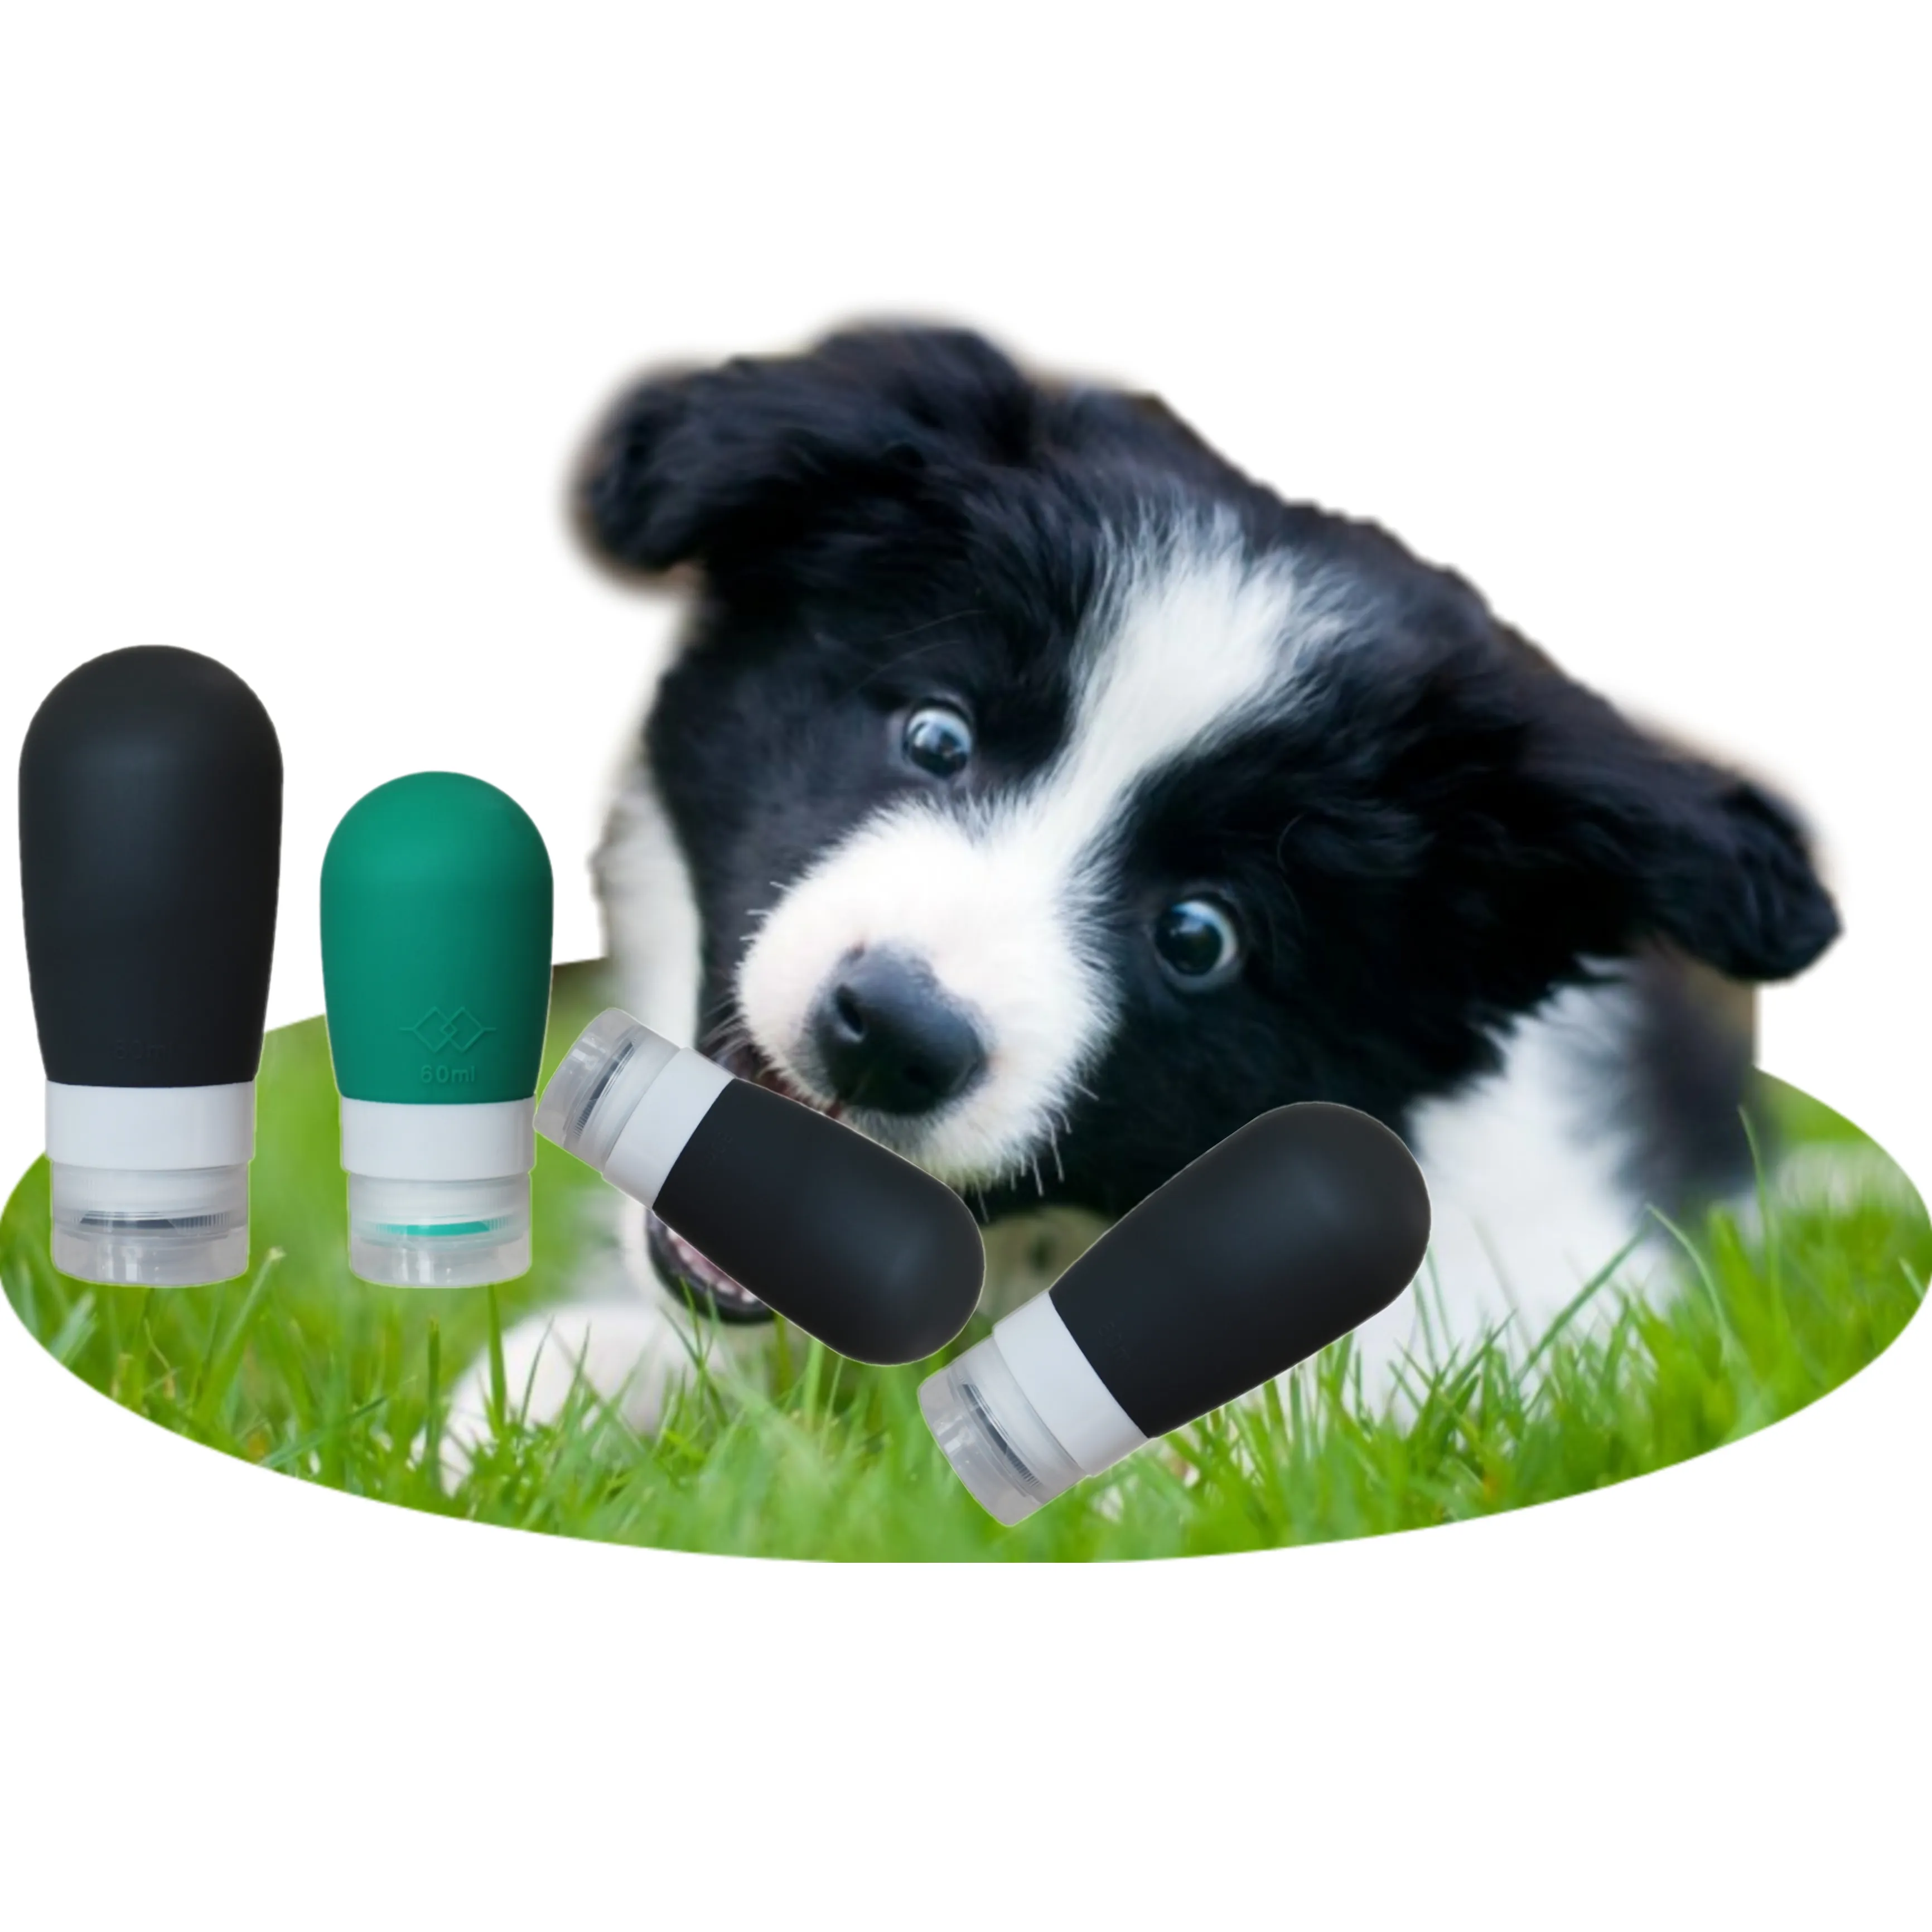 Tragbare Silikon-Hunde trainings flasche, um Hund Smart wieder verwendbare Squeeze Travel Feeder-Flaschen zu machen Dog Pet Toy Training Products